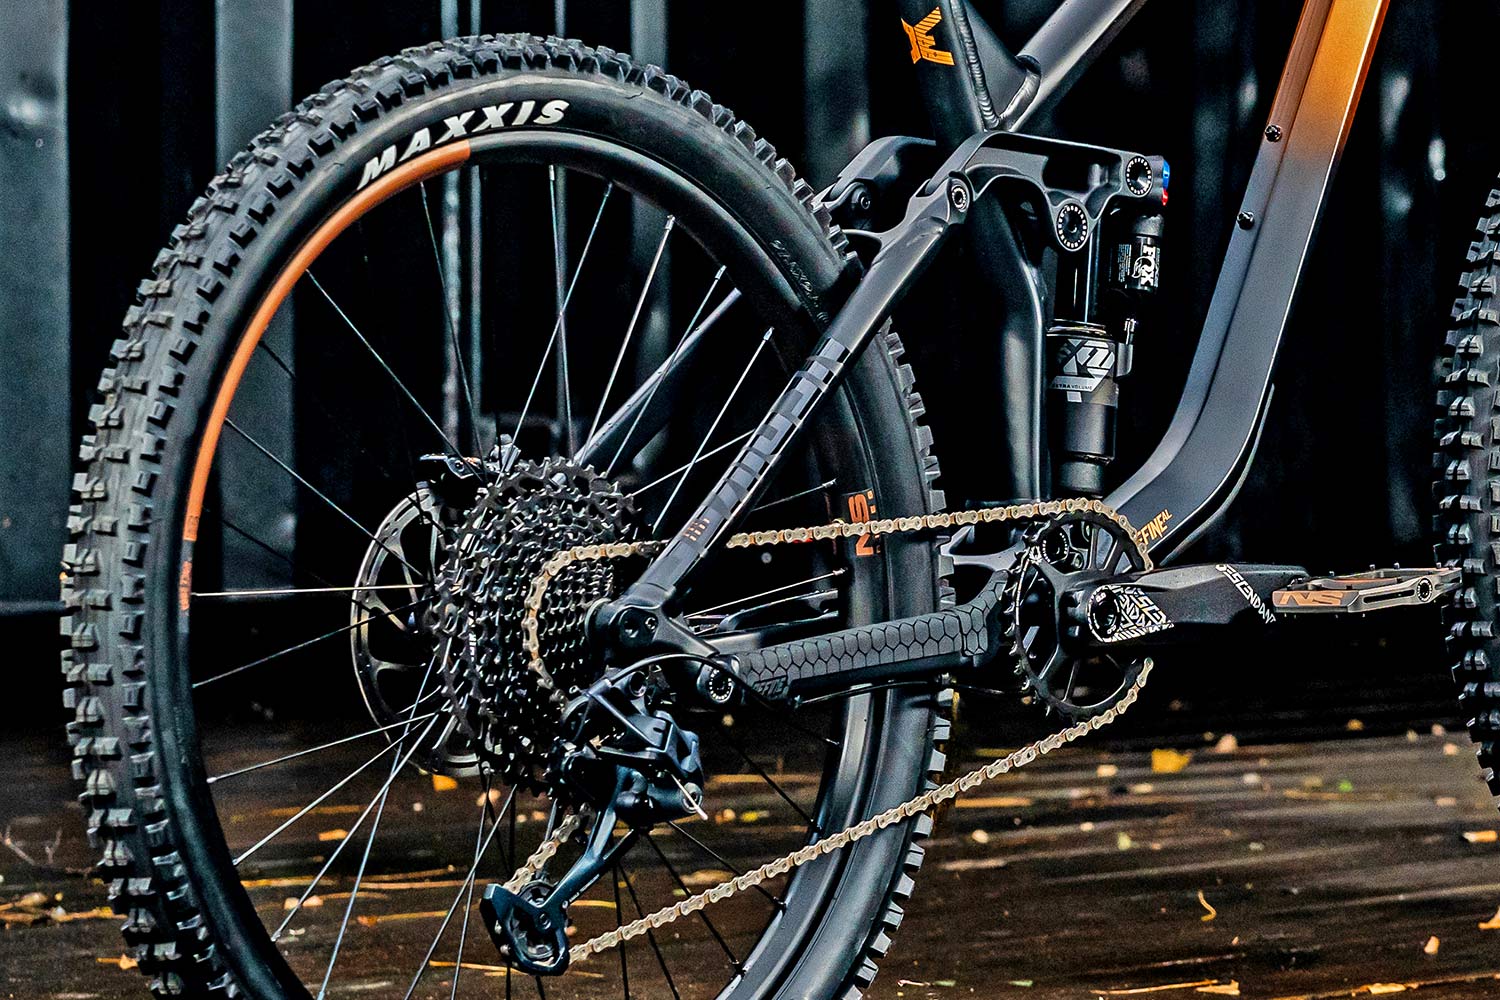 NS Bikes Define AL 170 long-travel mullet enduro plus all-mountain bike, photo by Piotr Jurczak, rear end detail